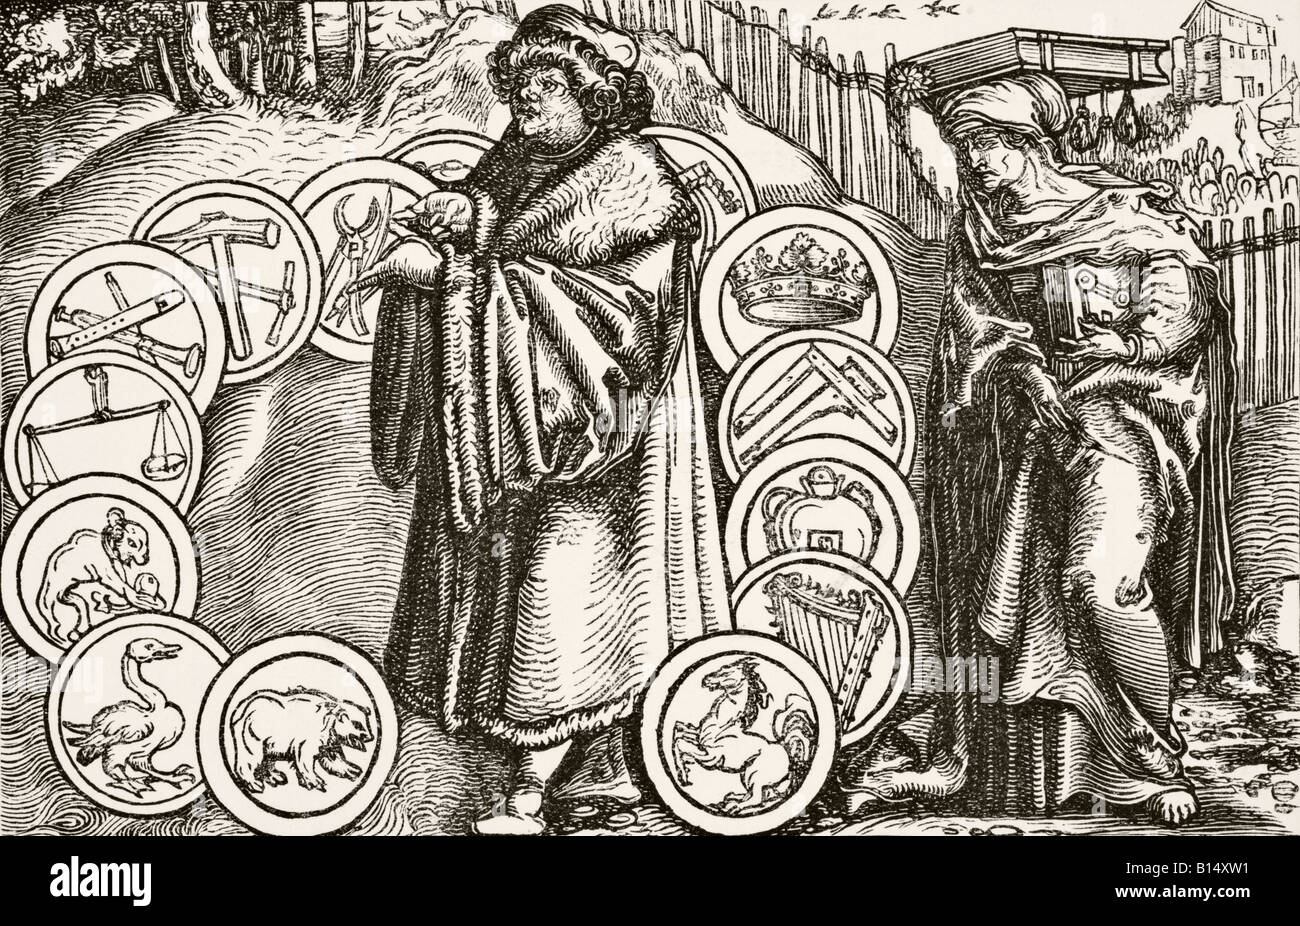 Detalle 28+ imagen filosofia medieval dibujos